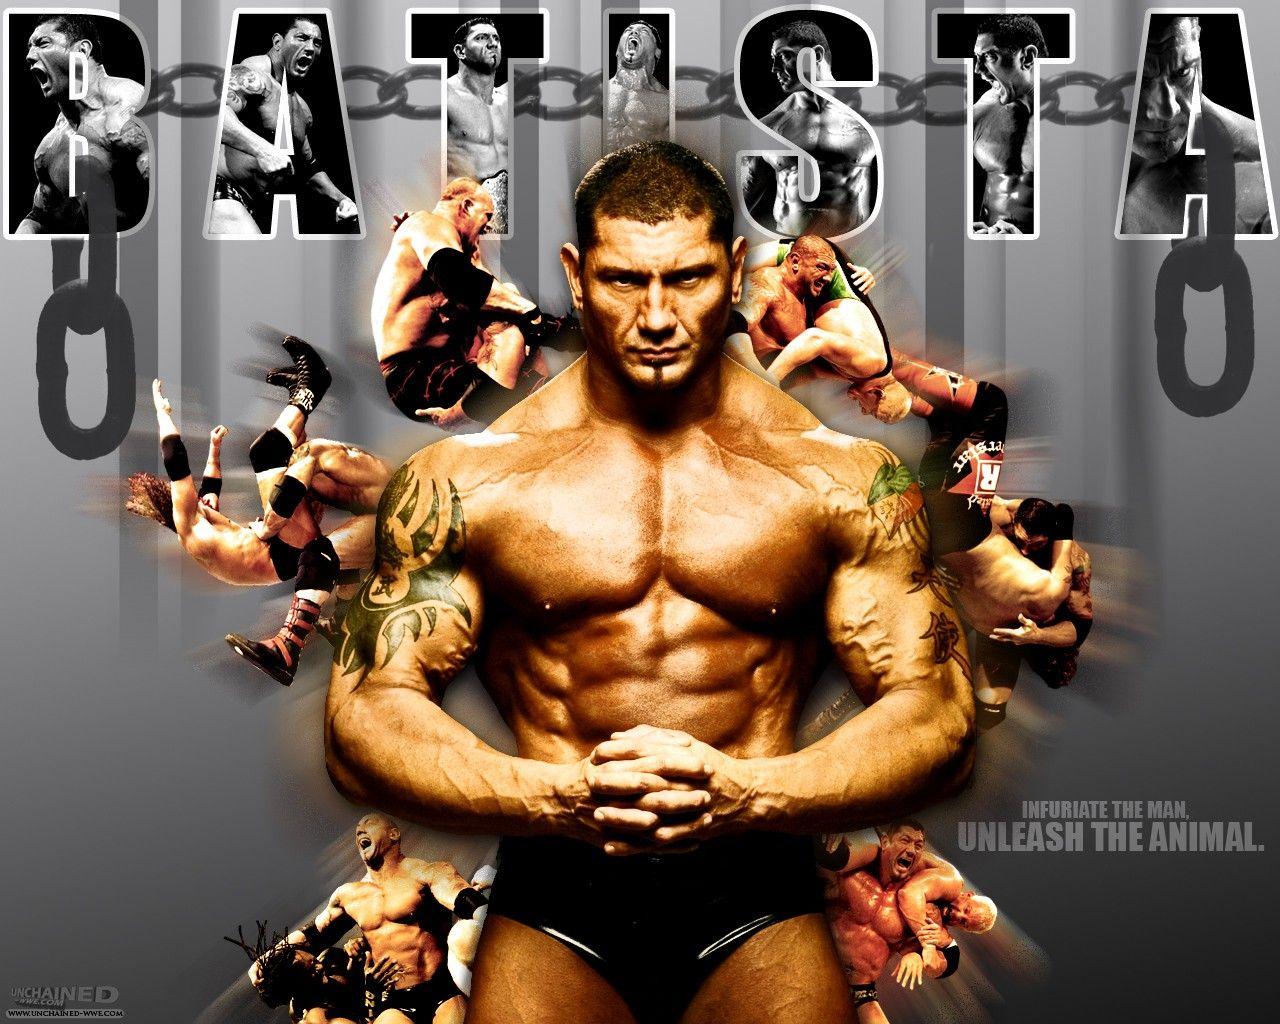 Excited FOR Batista's 2014 Return. Wwe, Wwe superstars, Wrestling superstars